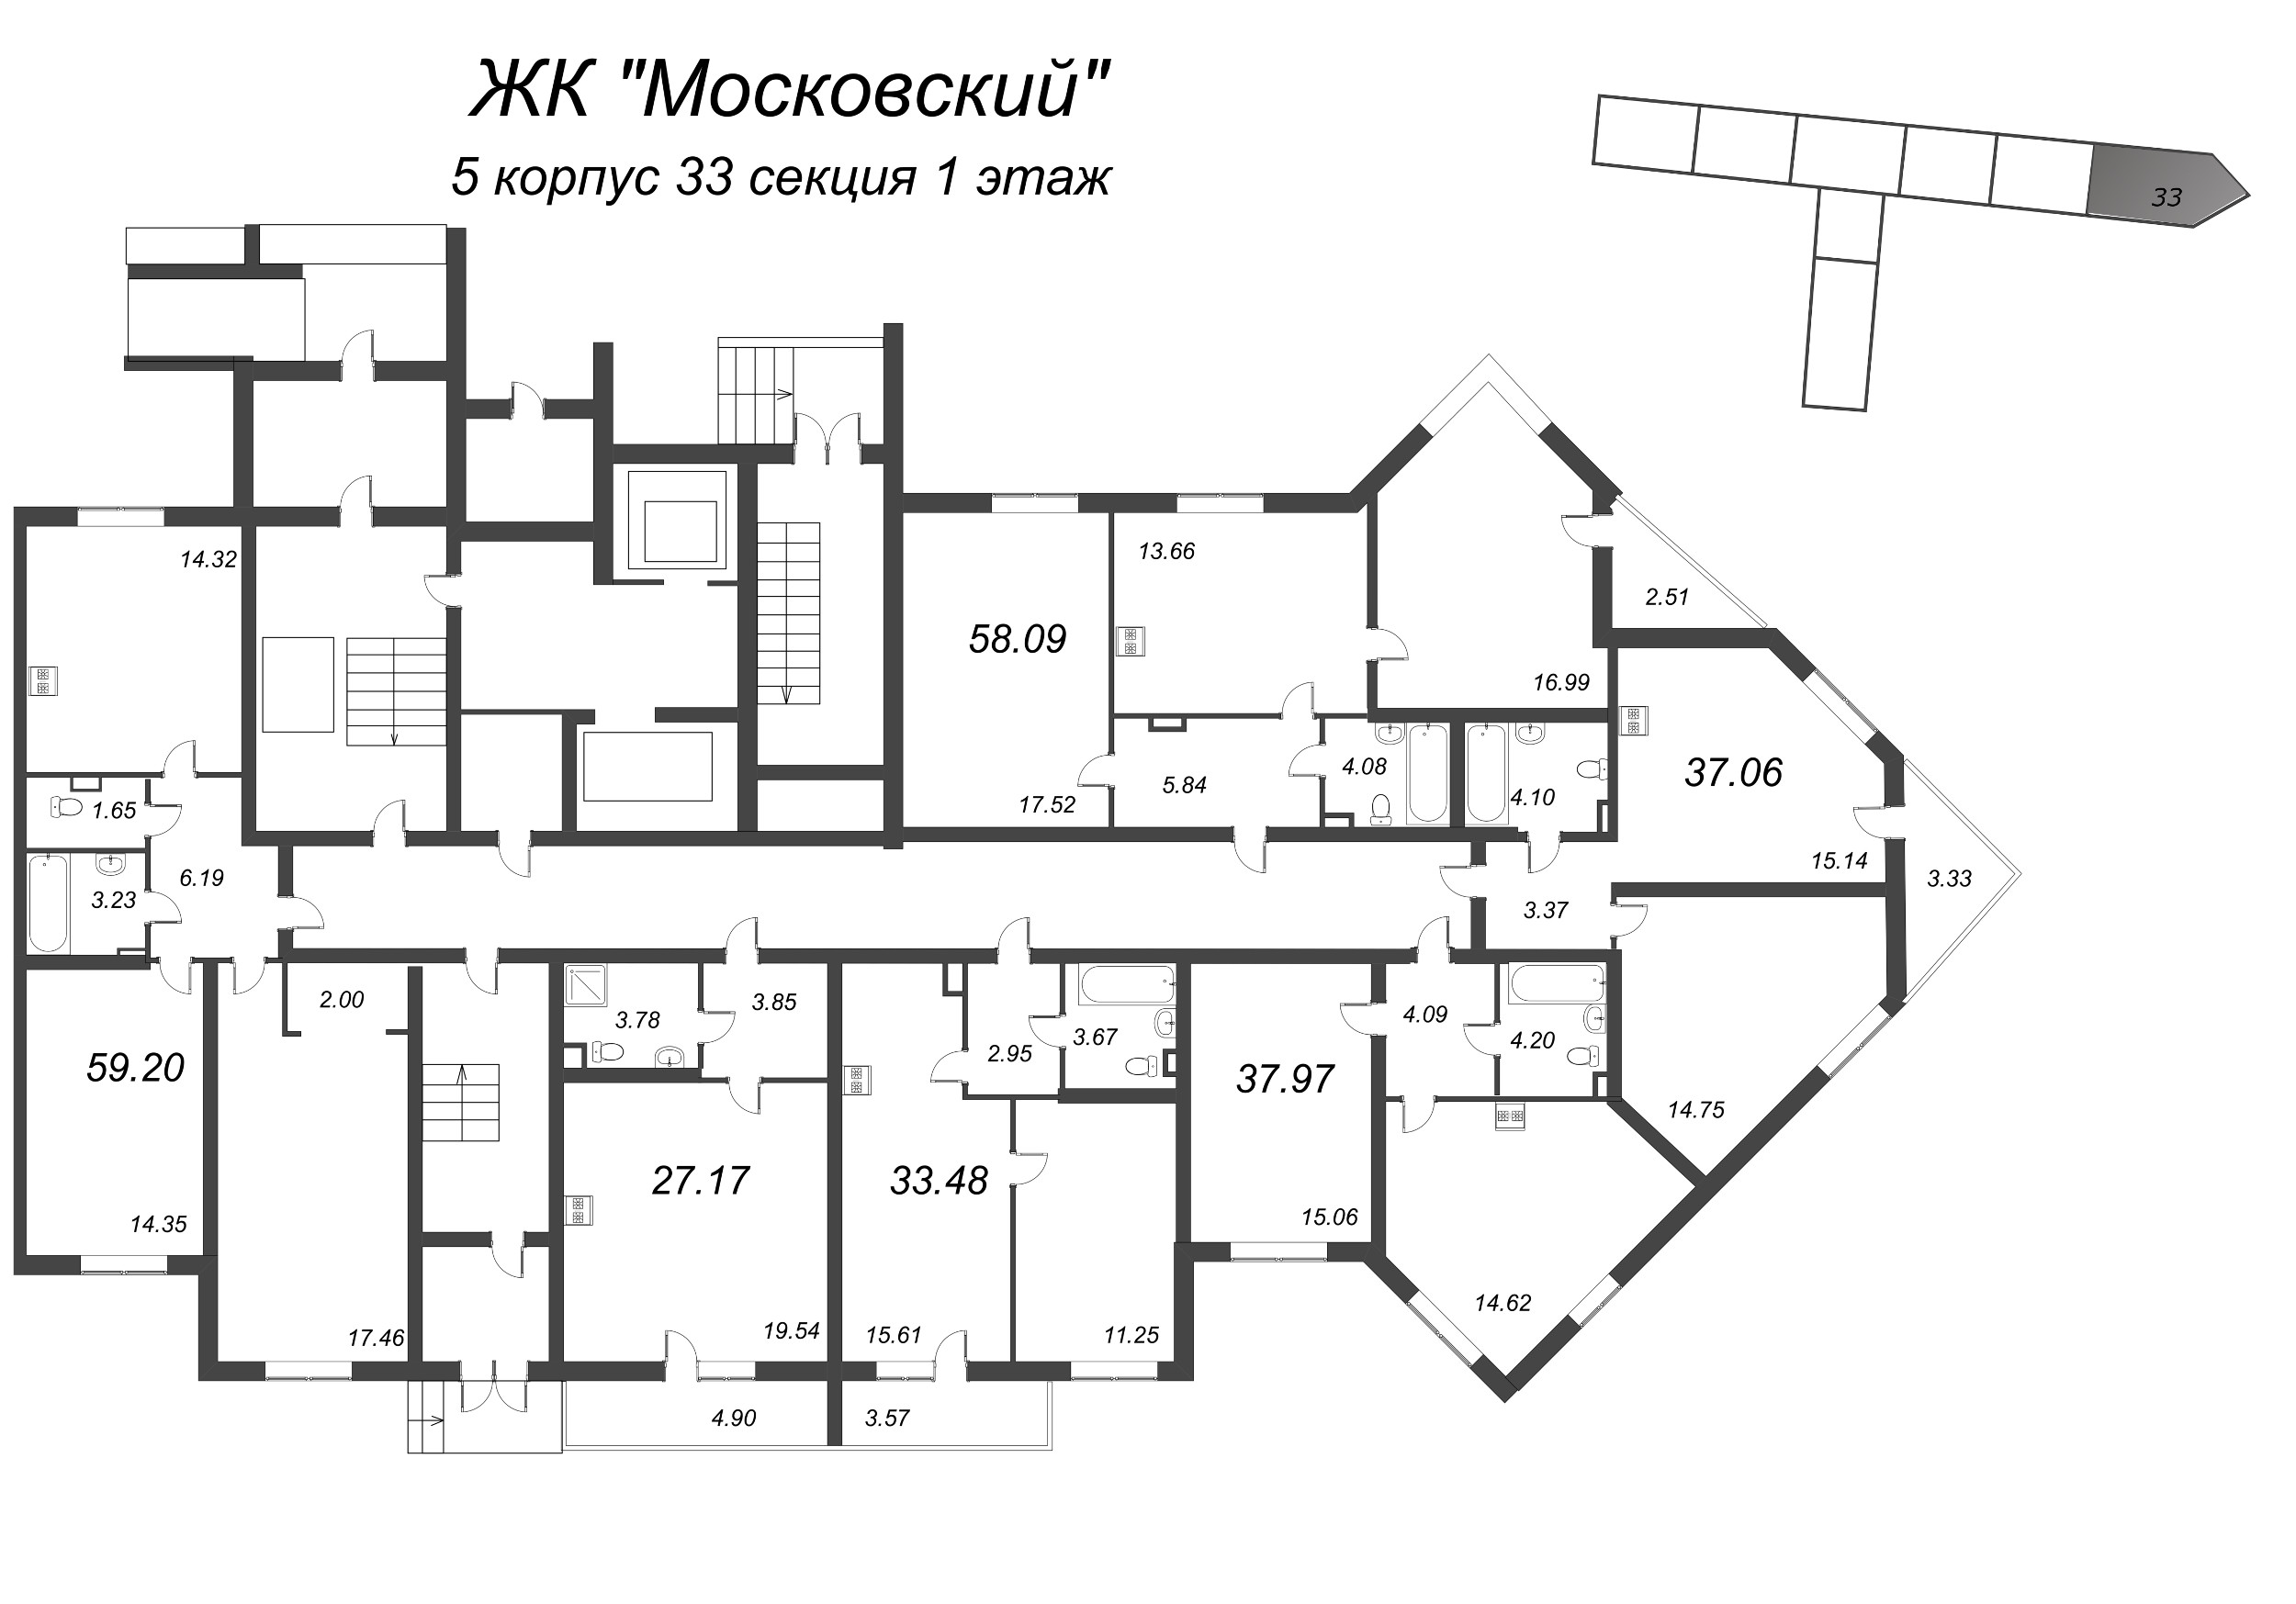 Квартира-студия, 27.17 м² в ЖК "Московский" - планировка этажа